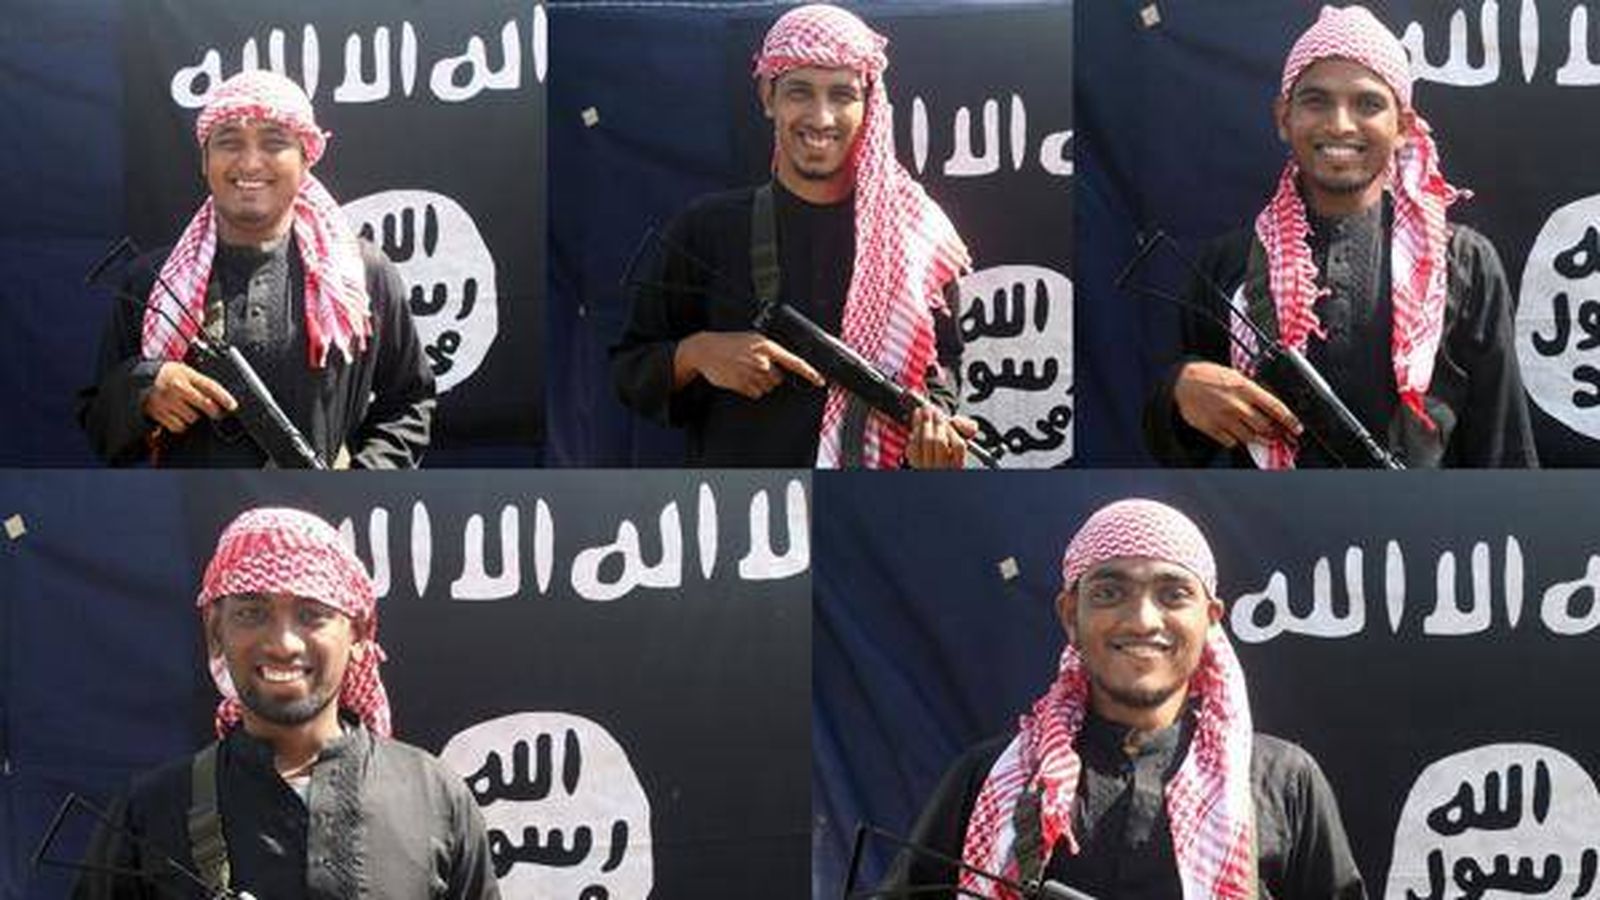 Foto: Cinco de los yihadistas que perpetraron el ataque al restaurante de Dacca (imagen difundida por la agencia yihadista Amaq).